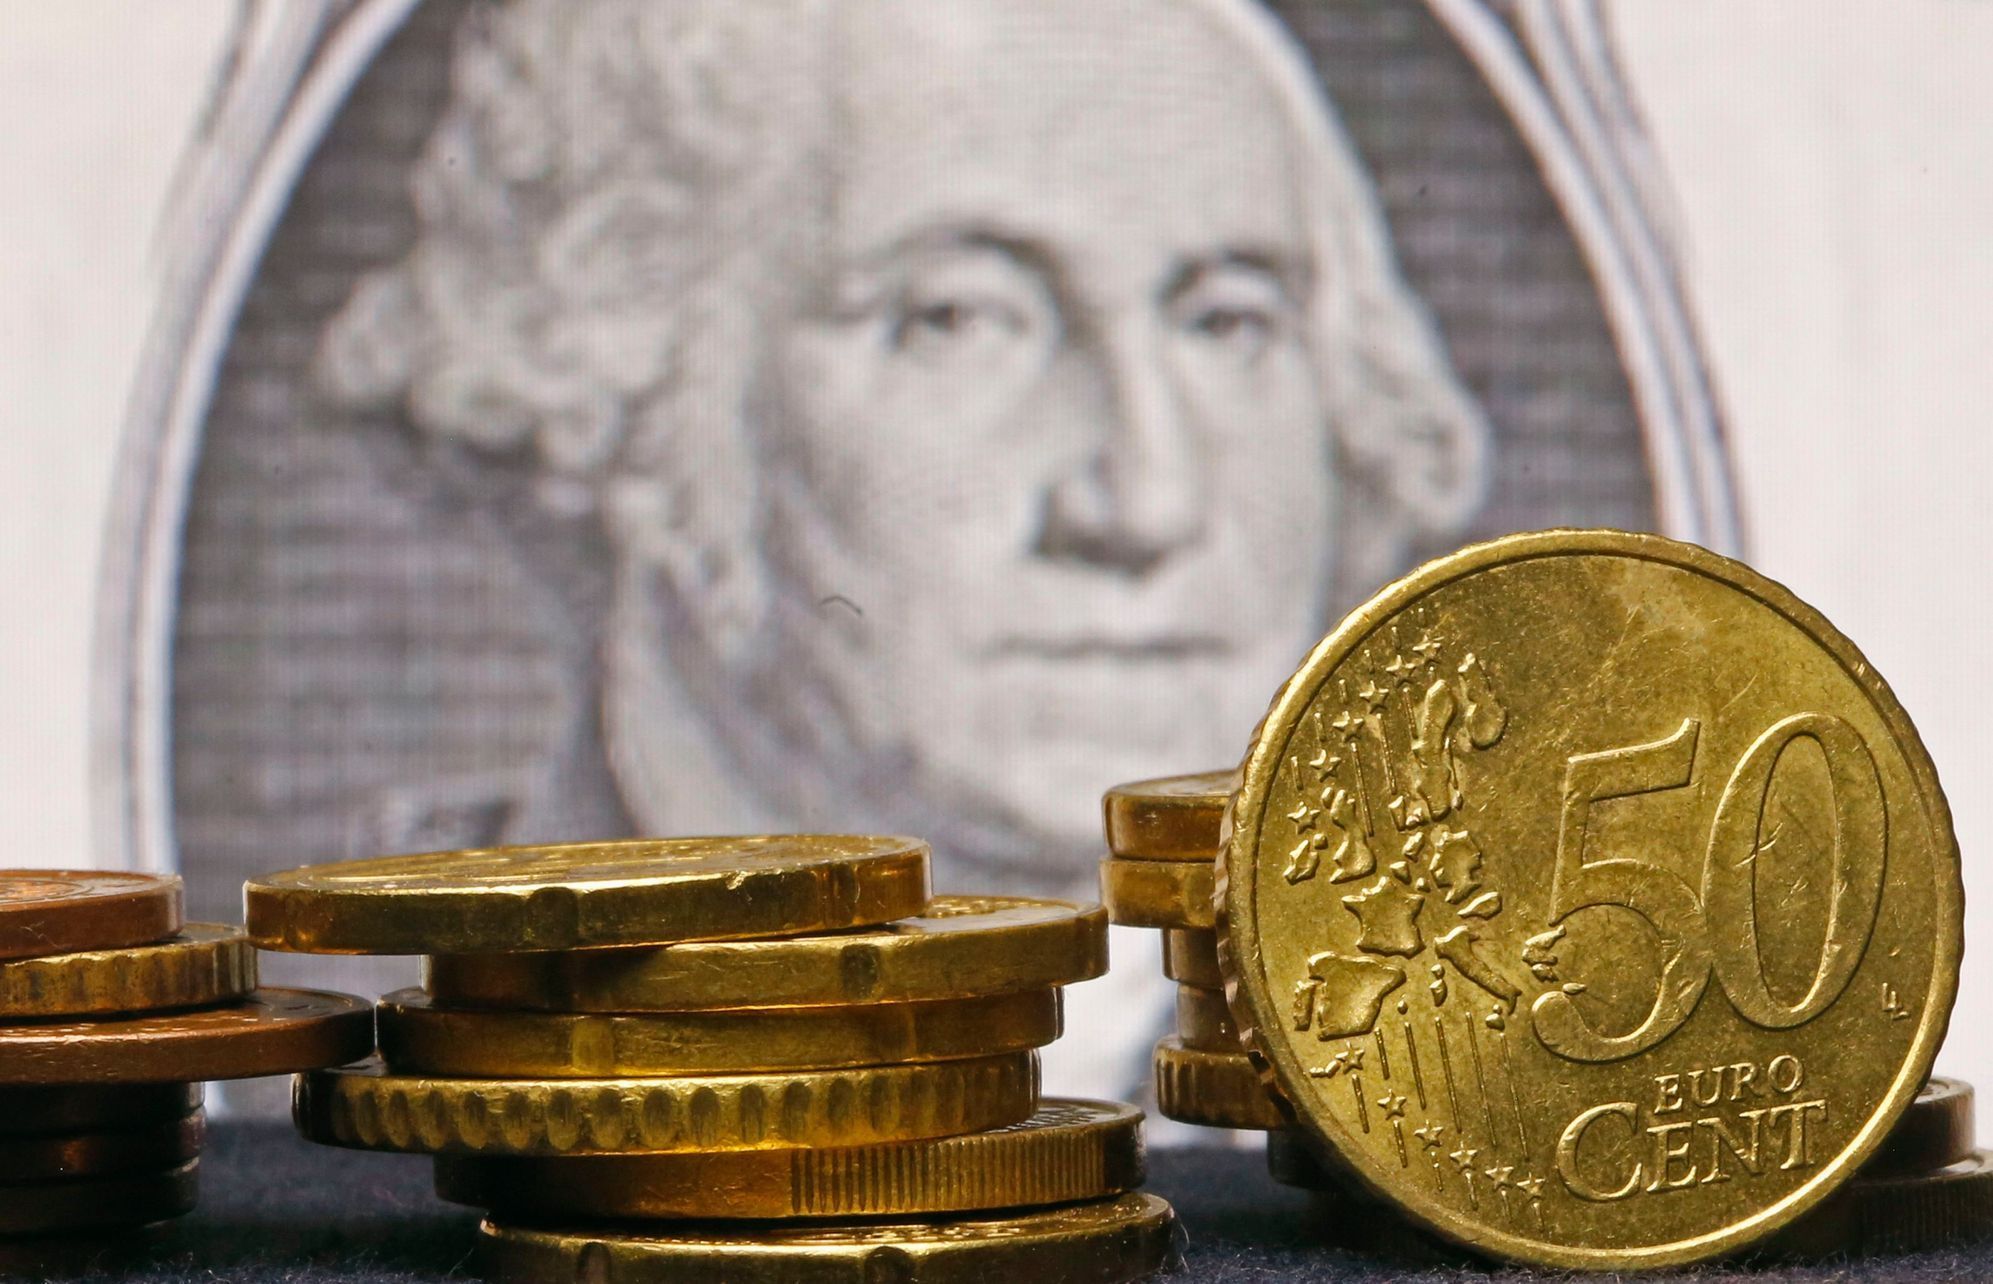 Euro dolar měna eurozóna mince cent